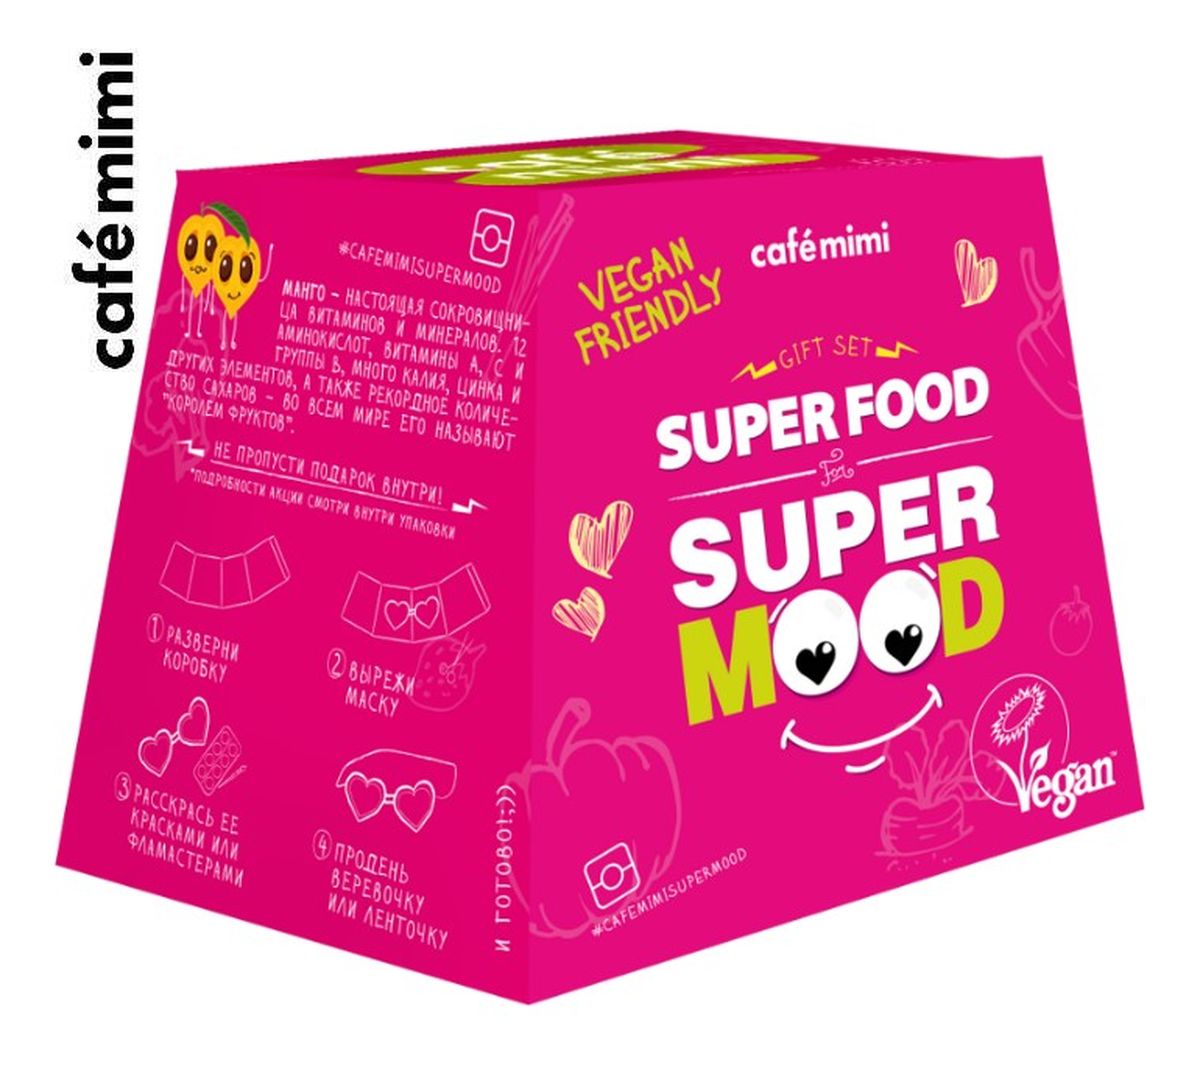 Zestaw upominkowy Super Food Super Mood żel pod prysznic + krem do rąk + kula do kąpieli